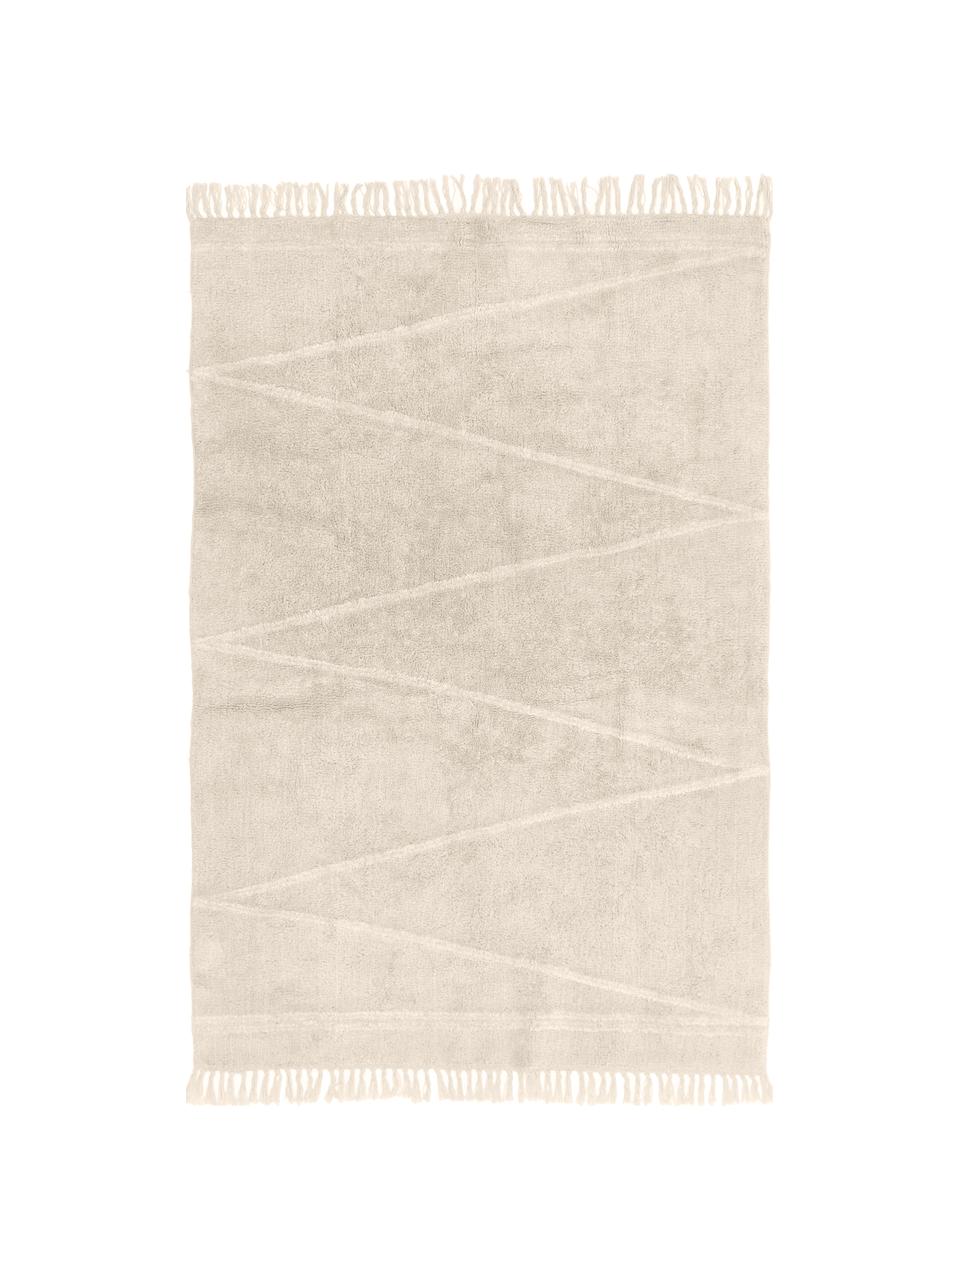 Ručně tkaný bavlněný koberec s klikatým vzorem a třásněmi Asisa, Béžová, krémově bílá, Š 120 cm, D 180 cm (velikost S)